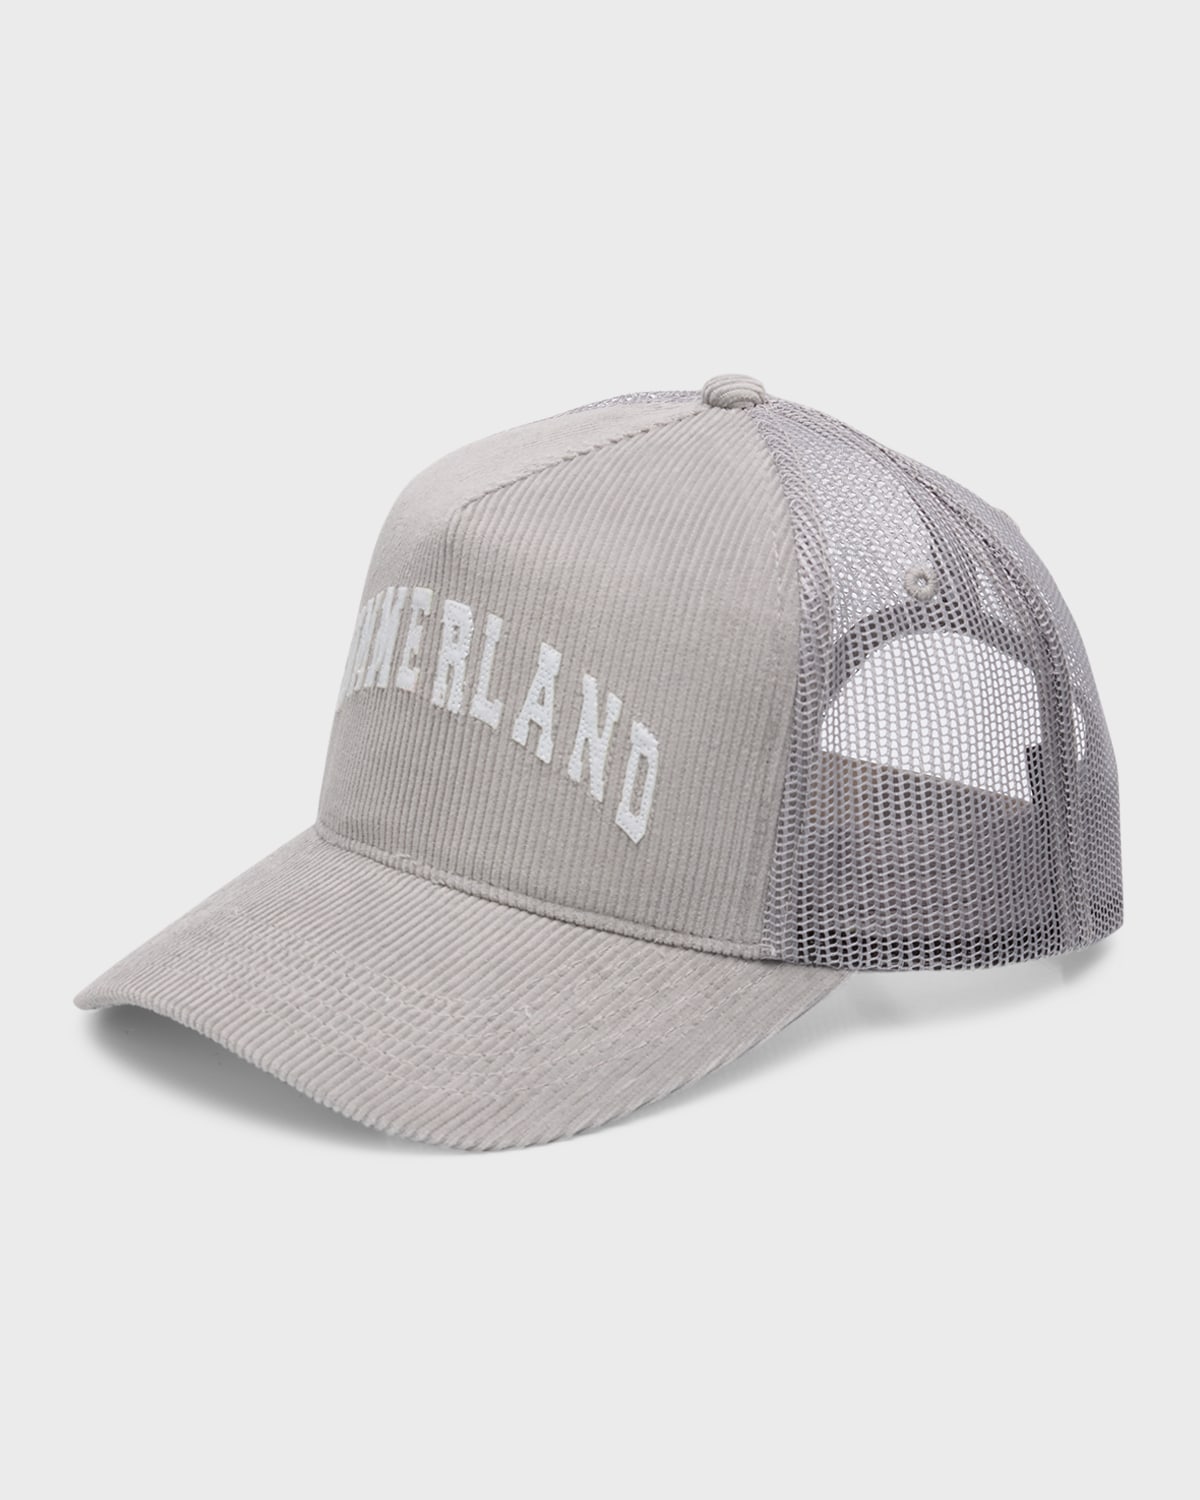 Men's Summerland Corduroy Trucker Hat